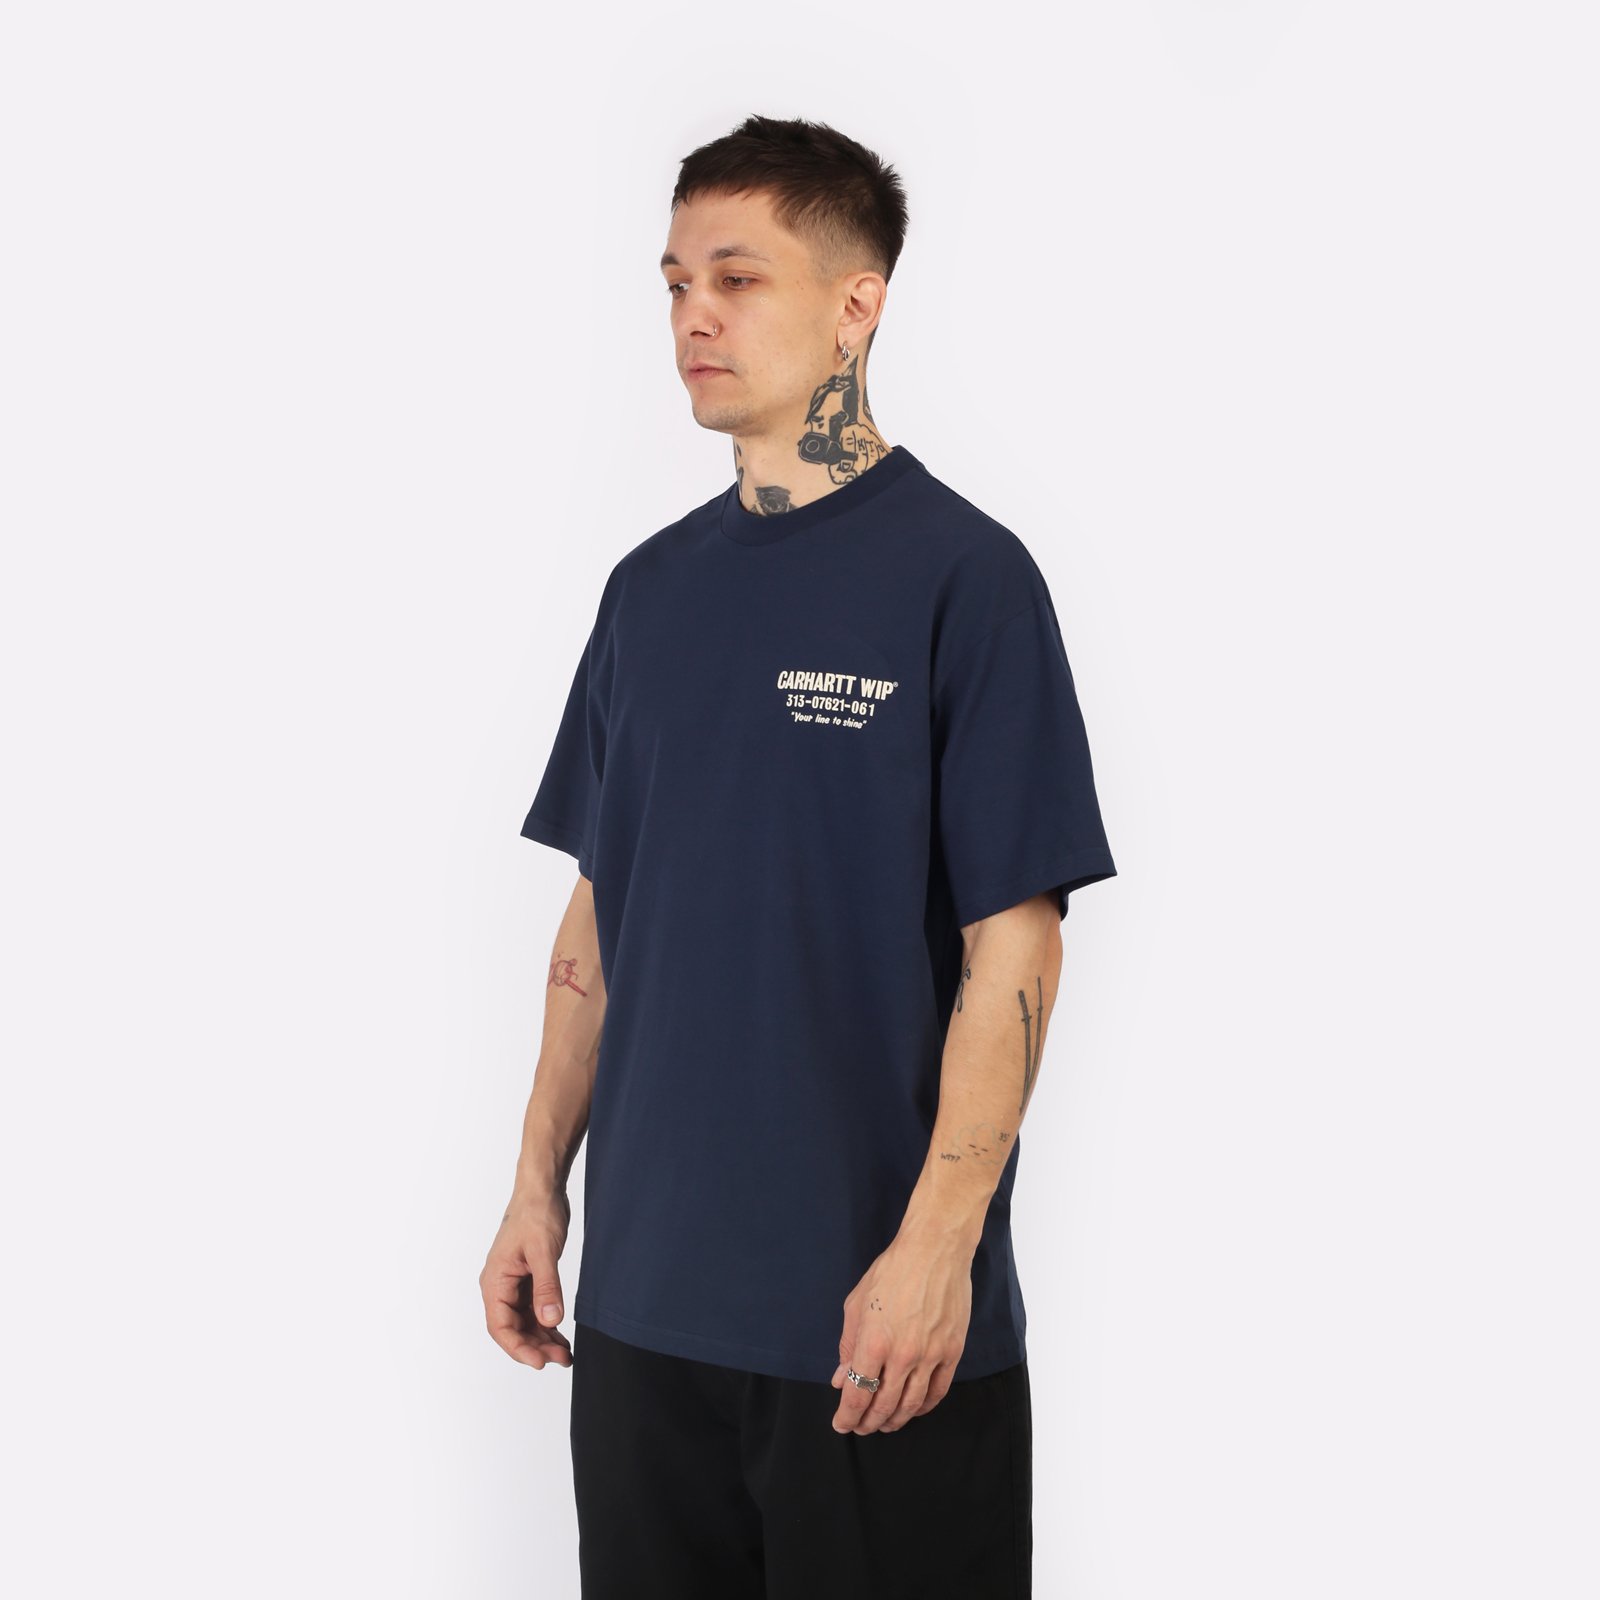 мужская футболка Carhartt WIP S/S Less Troubles T-Shirt  (I033187-blue/wax)  - цена, описание, фото 3